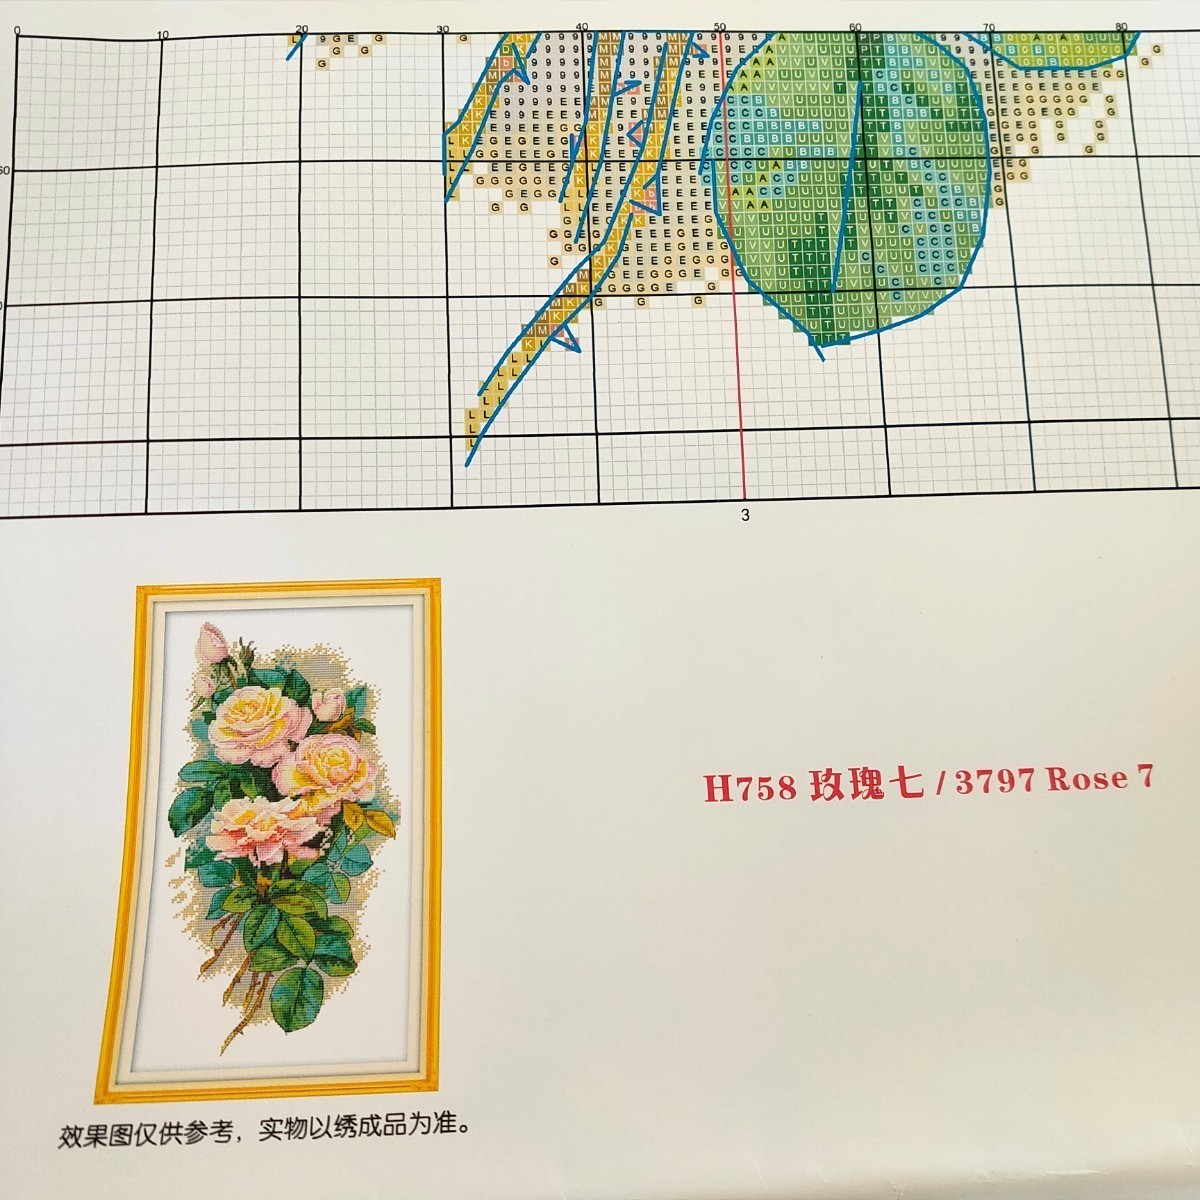 クロスステッチキット レトロローズ Retro rose バラ 薔薇 14CT 25×42cm 図案印刷あり 刺繍